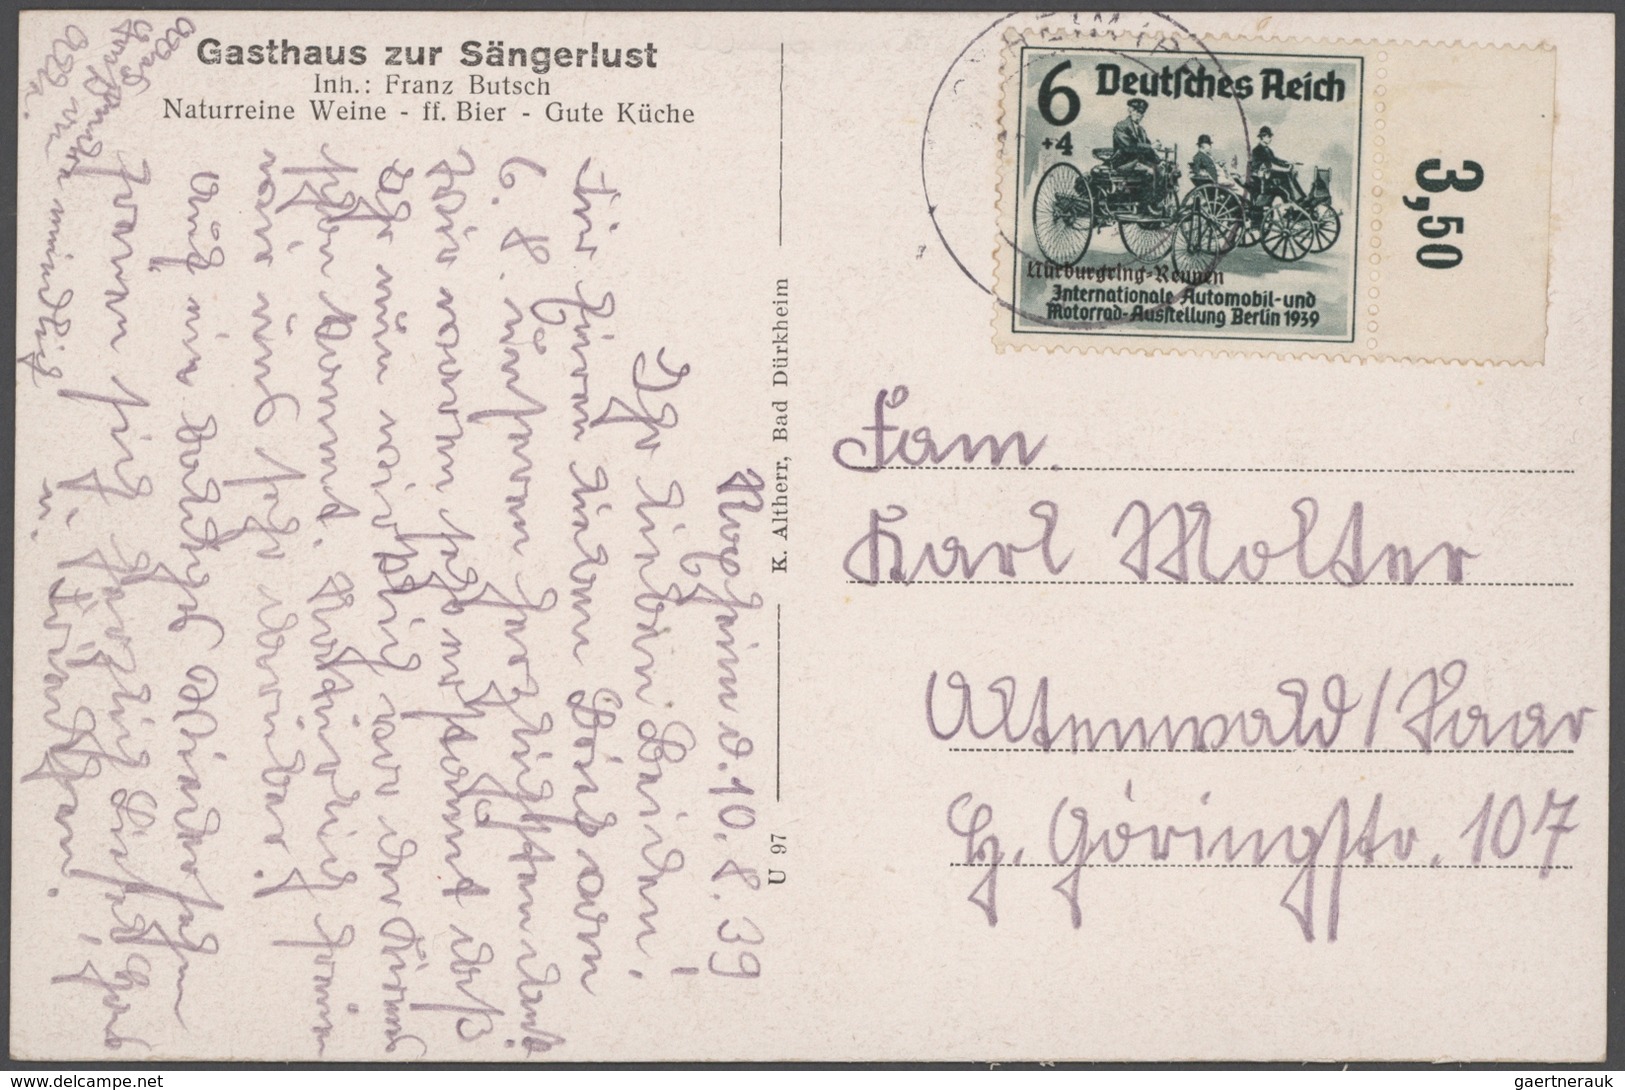 Deutsches Reich - 3. Reich: 1934/1945, Sammlung von ca. 450 Briefen und Karten, dabei etliche besser